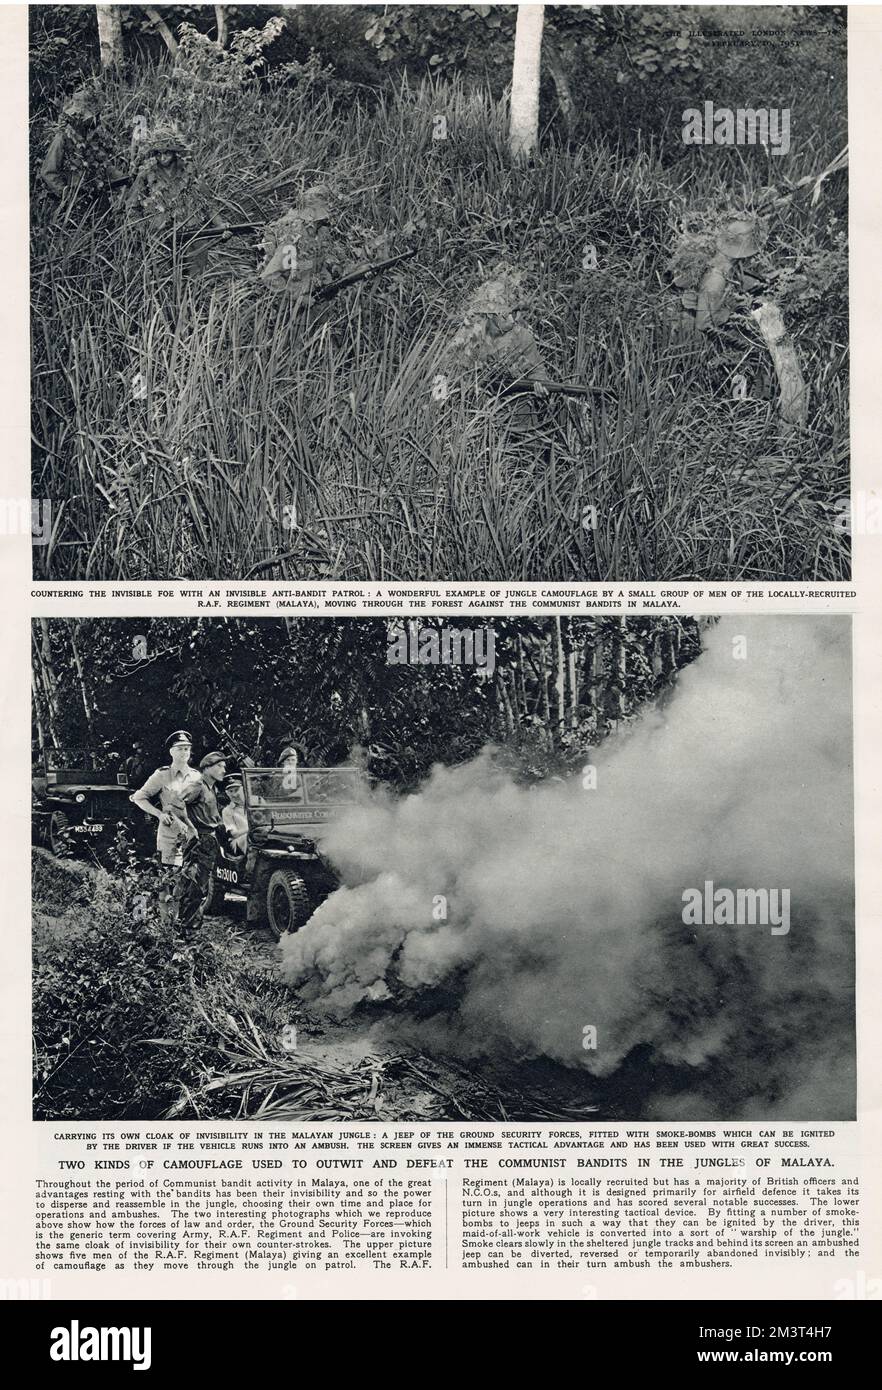 Pagina del Notiziario illustrato di Londra che descrive due tipi di mimetismo usati per sconfiggere i banditi comunisti nelle giungle della Malaya. Le fotografie principali mostrano un'invisibile pattuglia anti-bandito composta da un gruppo di uomini provenienti da un reggimento della RAF reclutato localmente (Malaya). L'immagine in basso mostra una jeep dotata di bombe fumé, che potrebbero accendersi in caso di imboscata. Data: 1951 Foto Stock